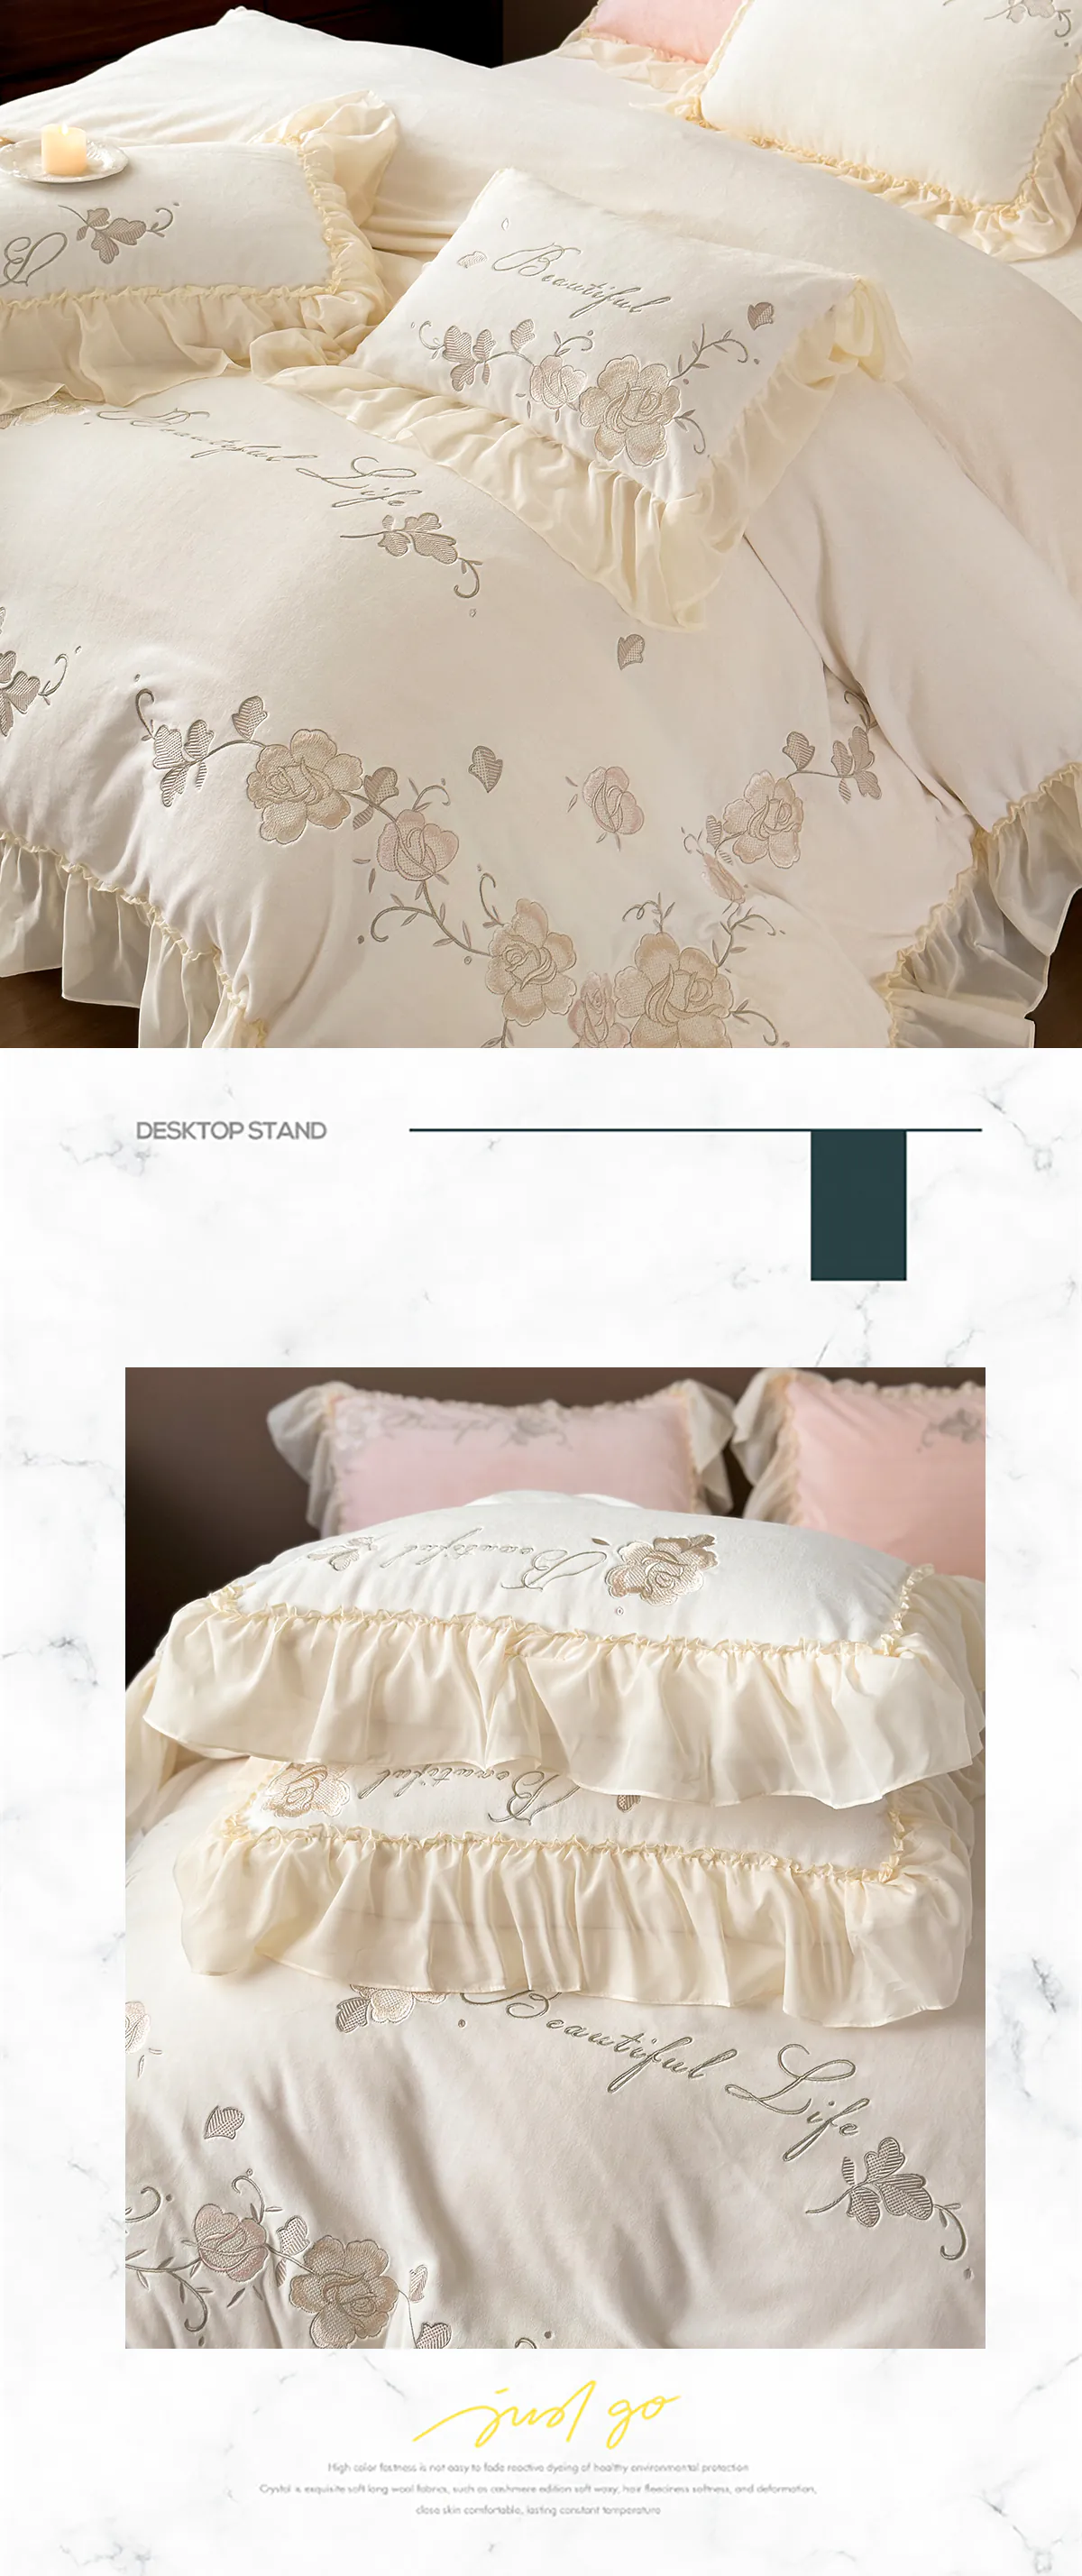 Aesthetic-Soft-Milk-Fiber-Duvet-Cover-Bed-Sheet-Pillowcases-4-Pcs-Set18